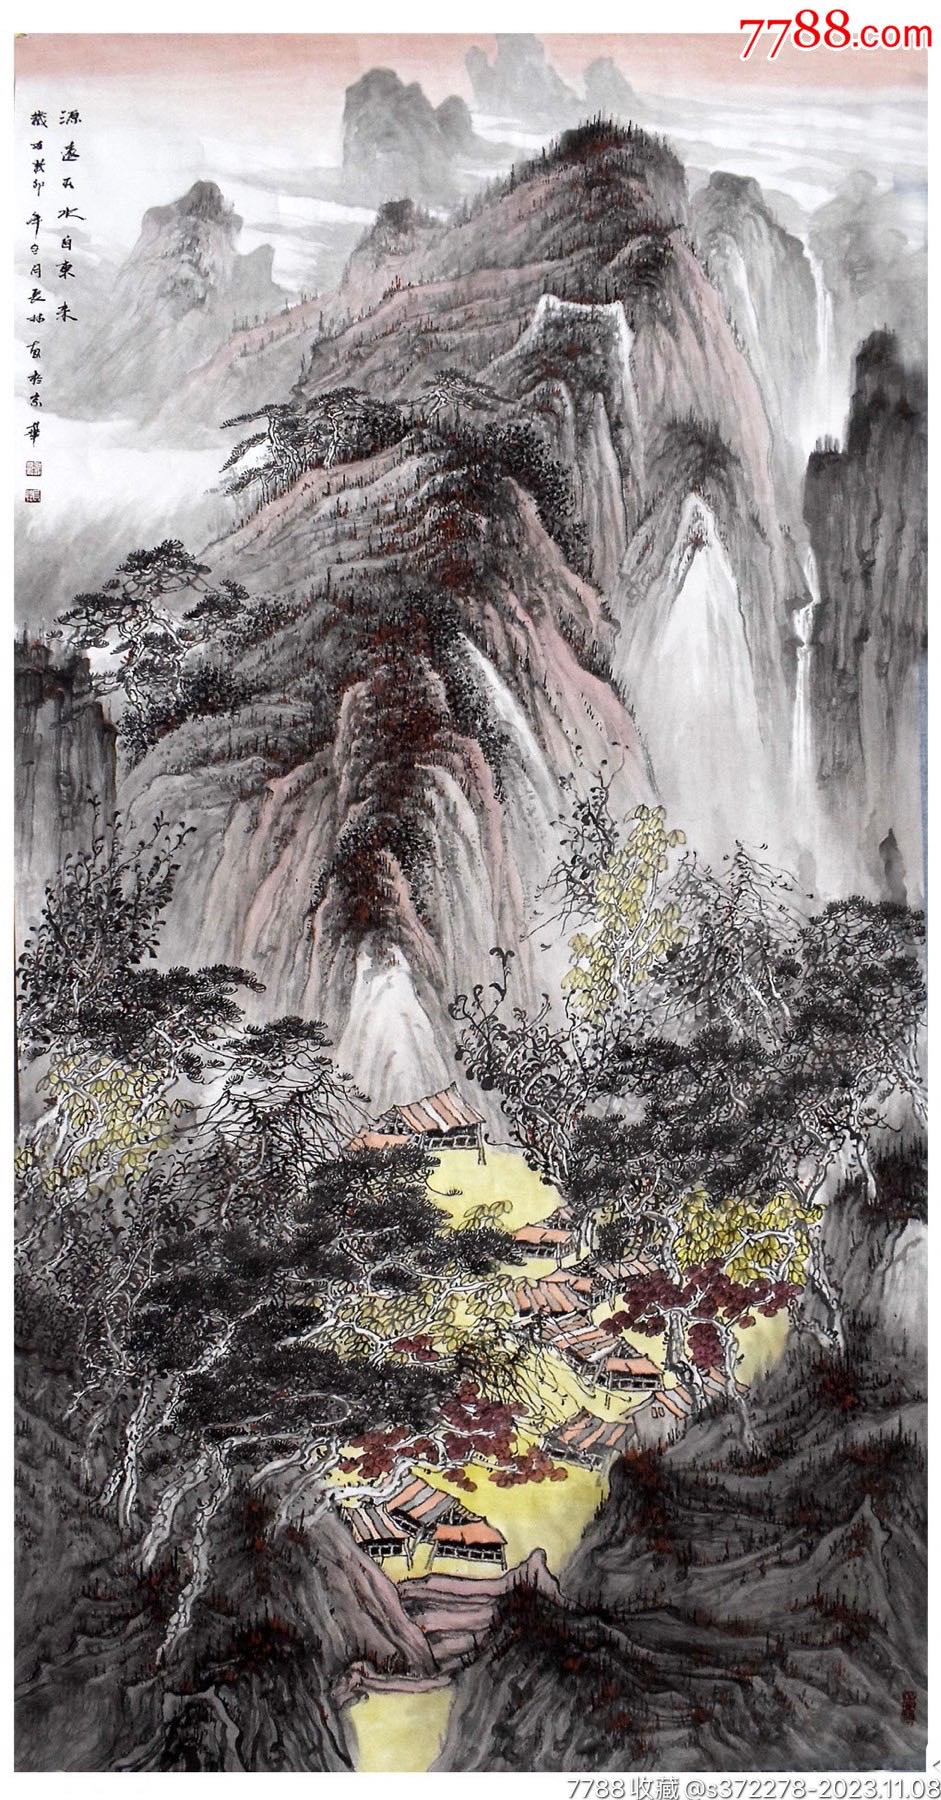 卫长林山水画图片